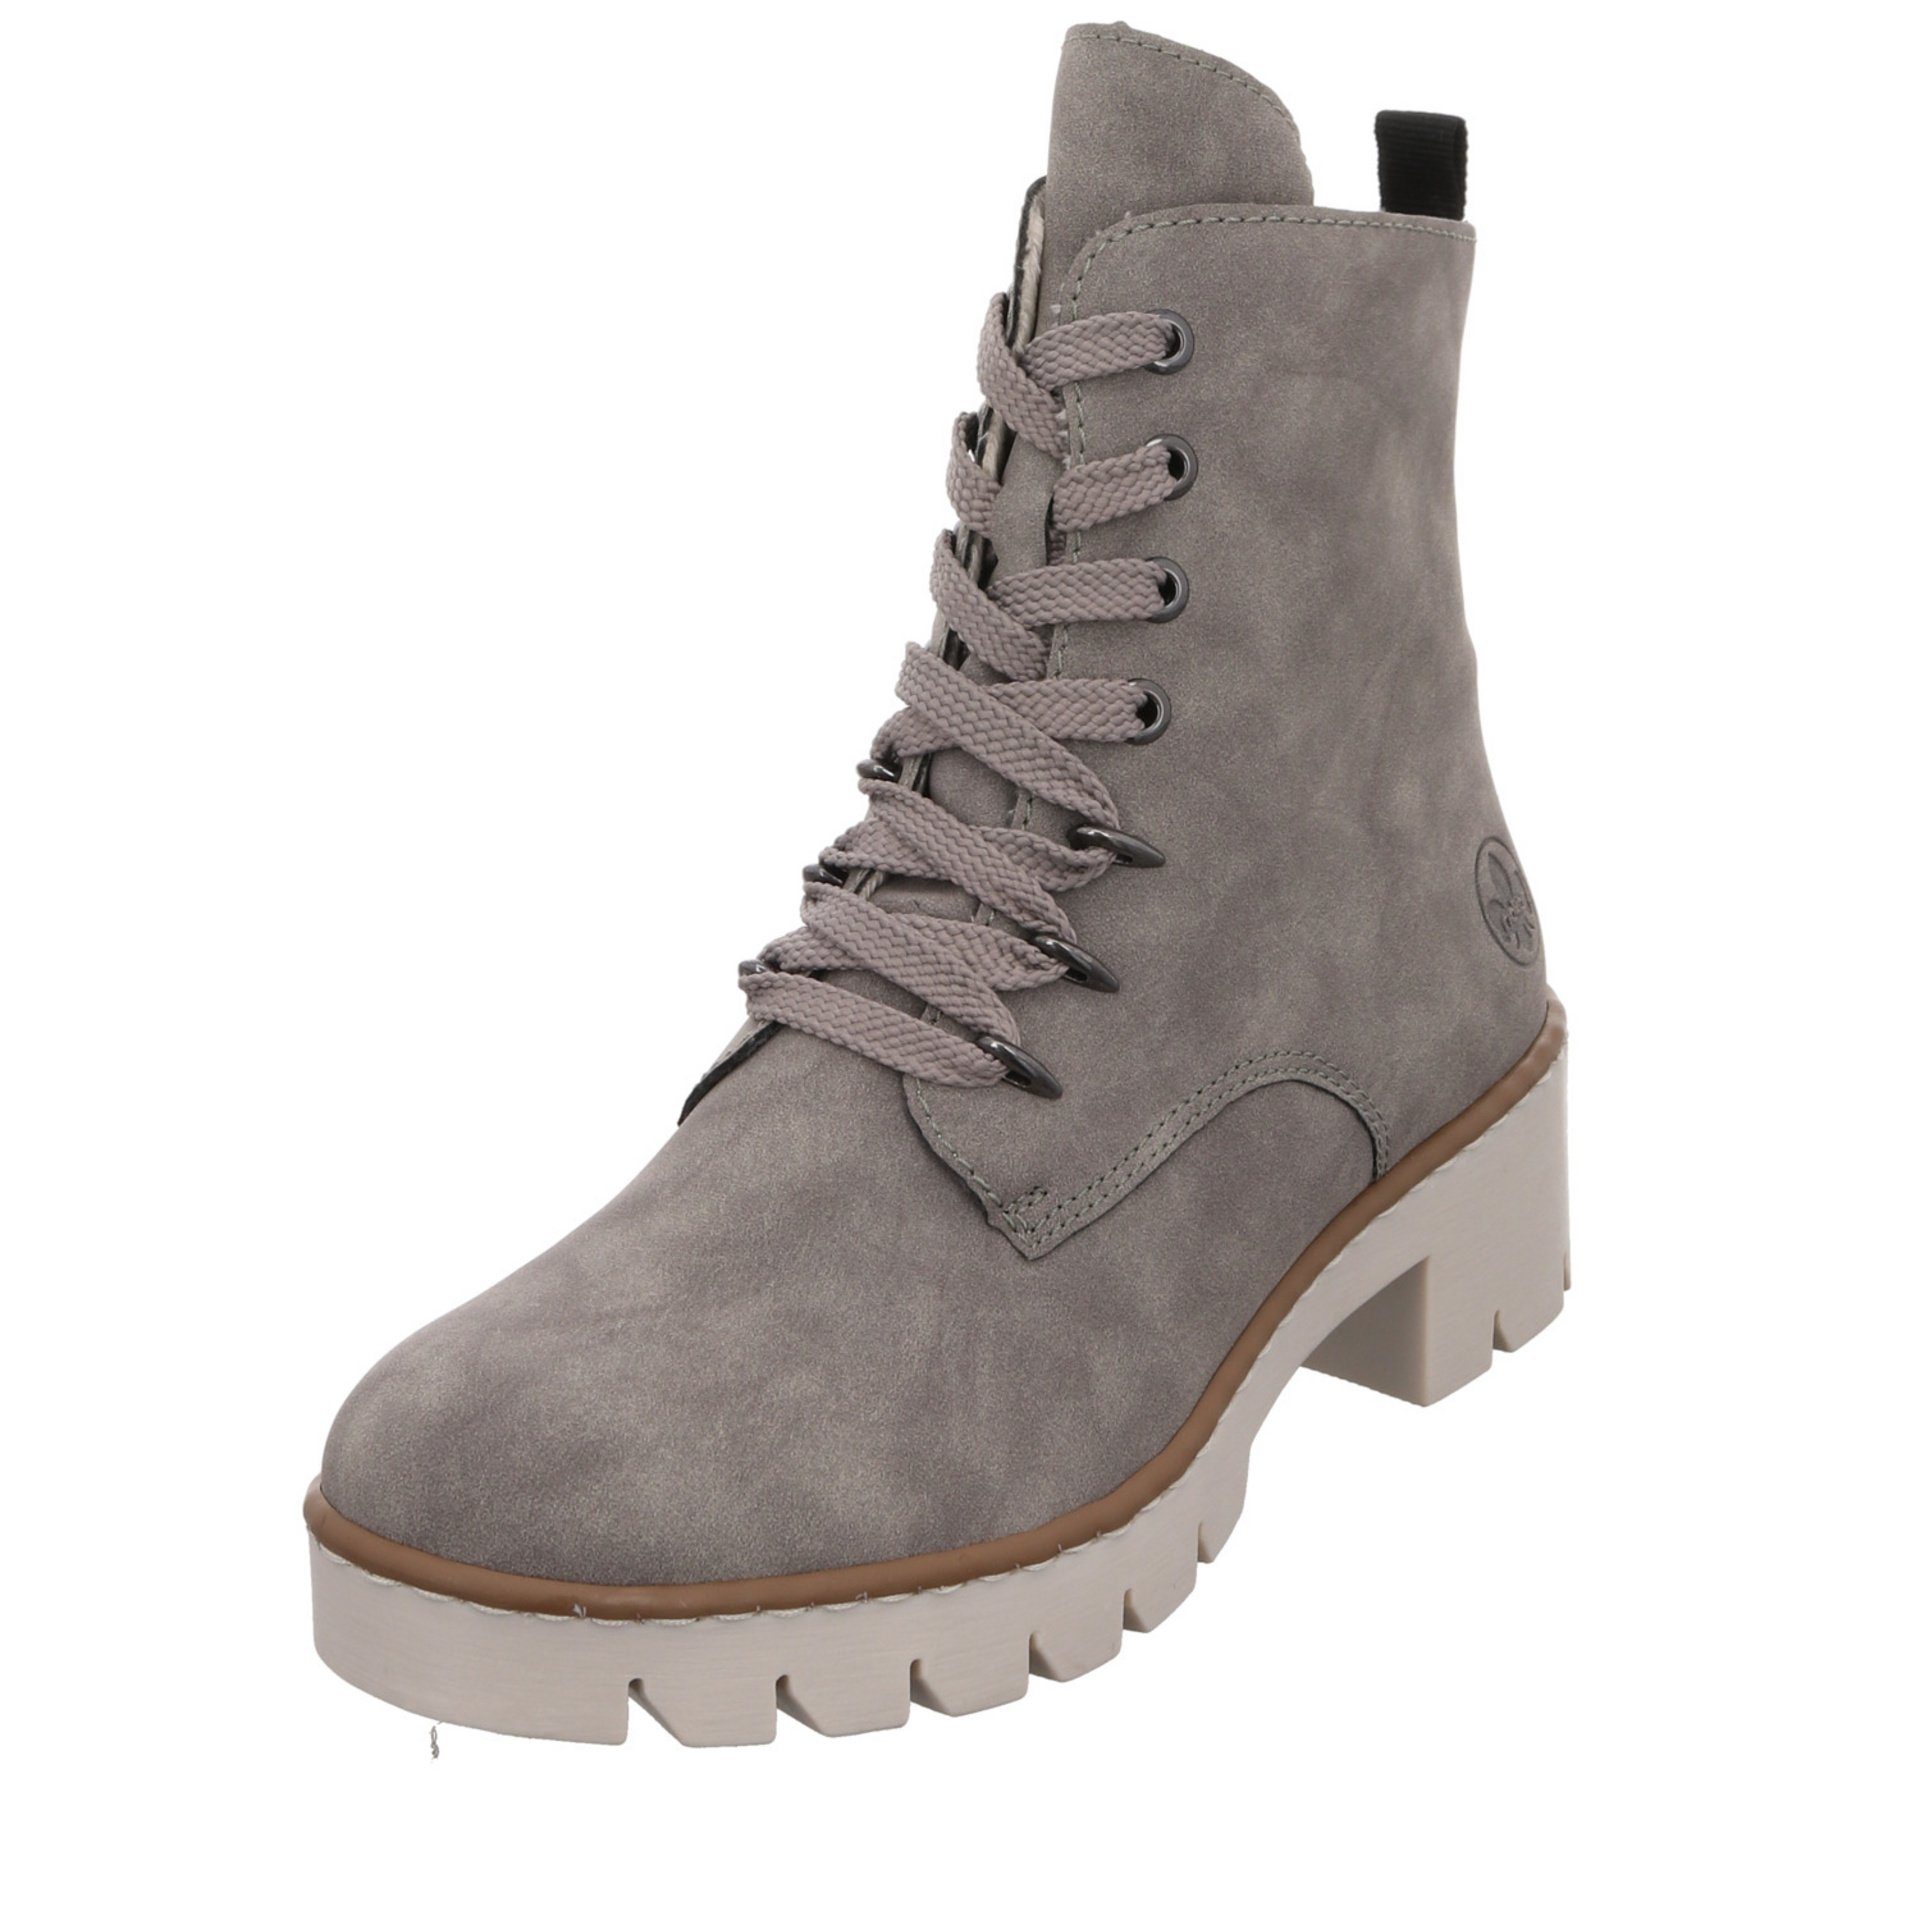 Rieker »Damen Stiefeletten Schuhe Boots Elegant Freizeit« Schnürstiefelette  Synthetik online kaufen | OTTO